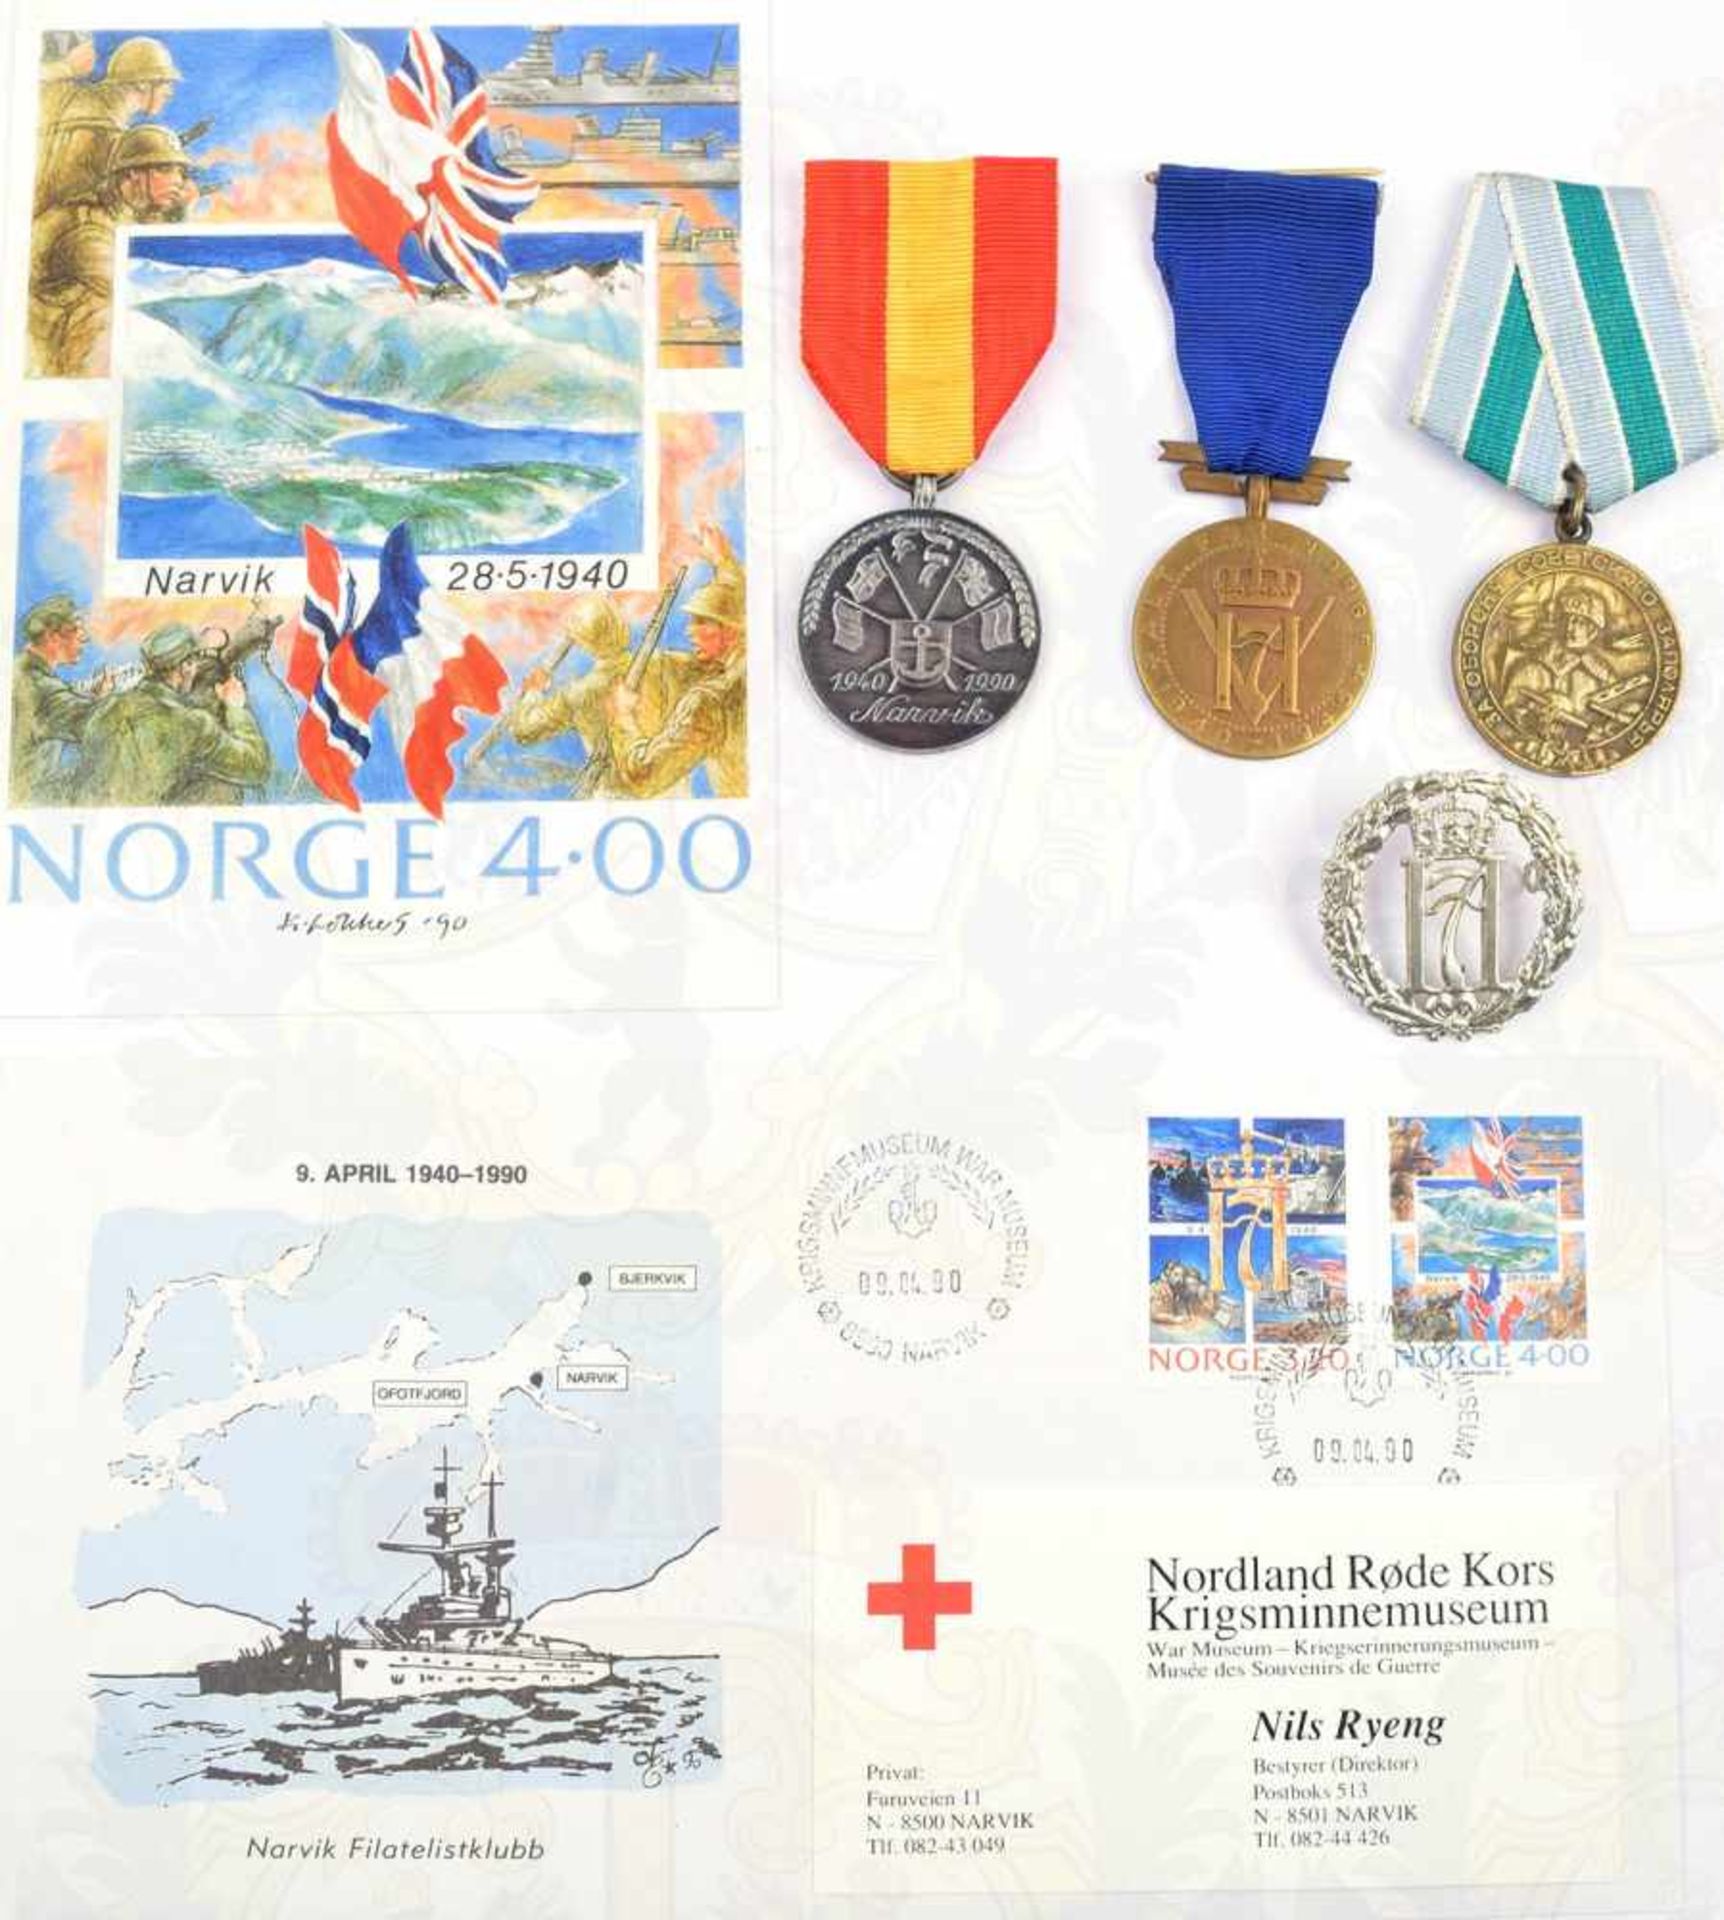 2 ERINNERUNGSMEDAILLEN, Alt for Norge 1940-1915 u. Narvik 1940-1990; dazu Mützenabzeichen, sowjet.